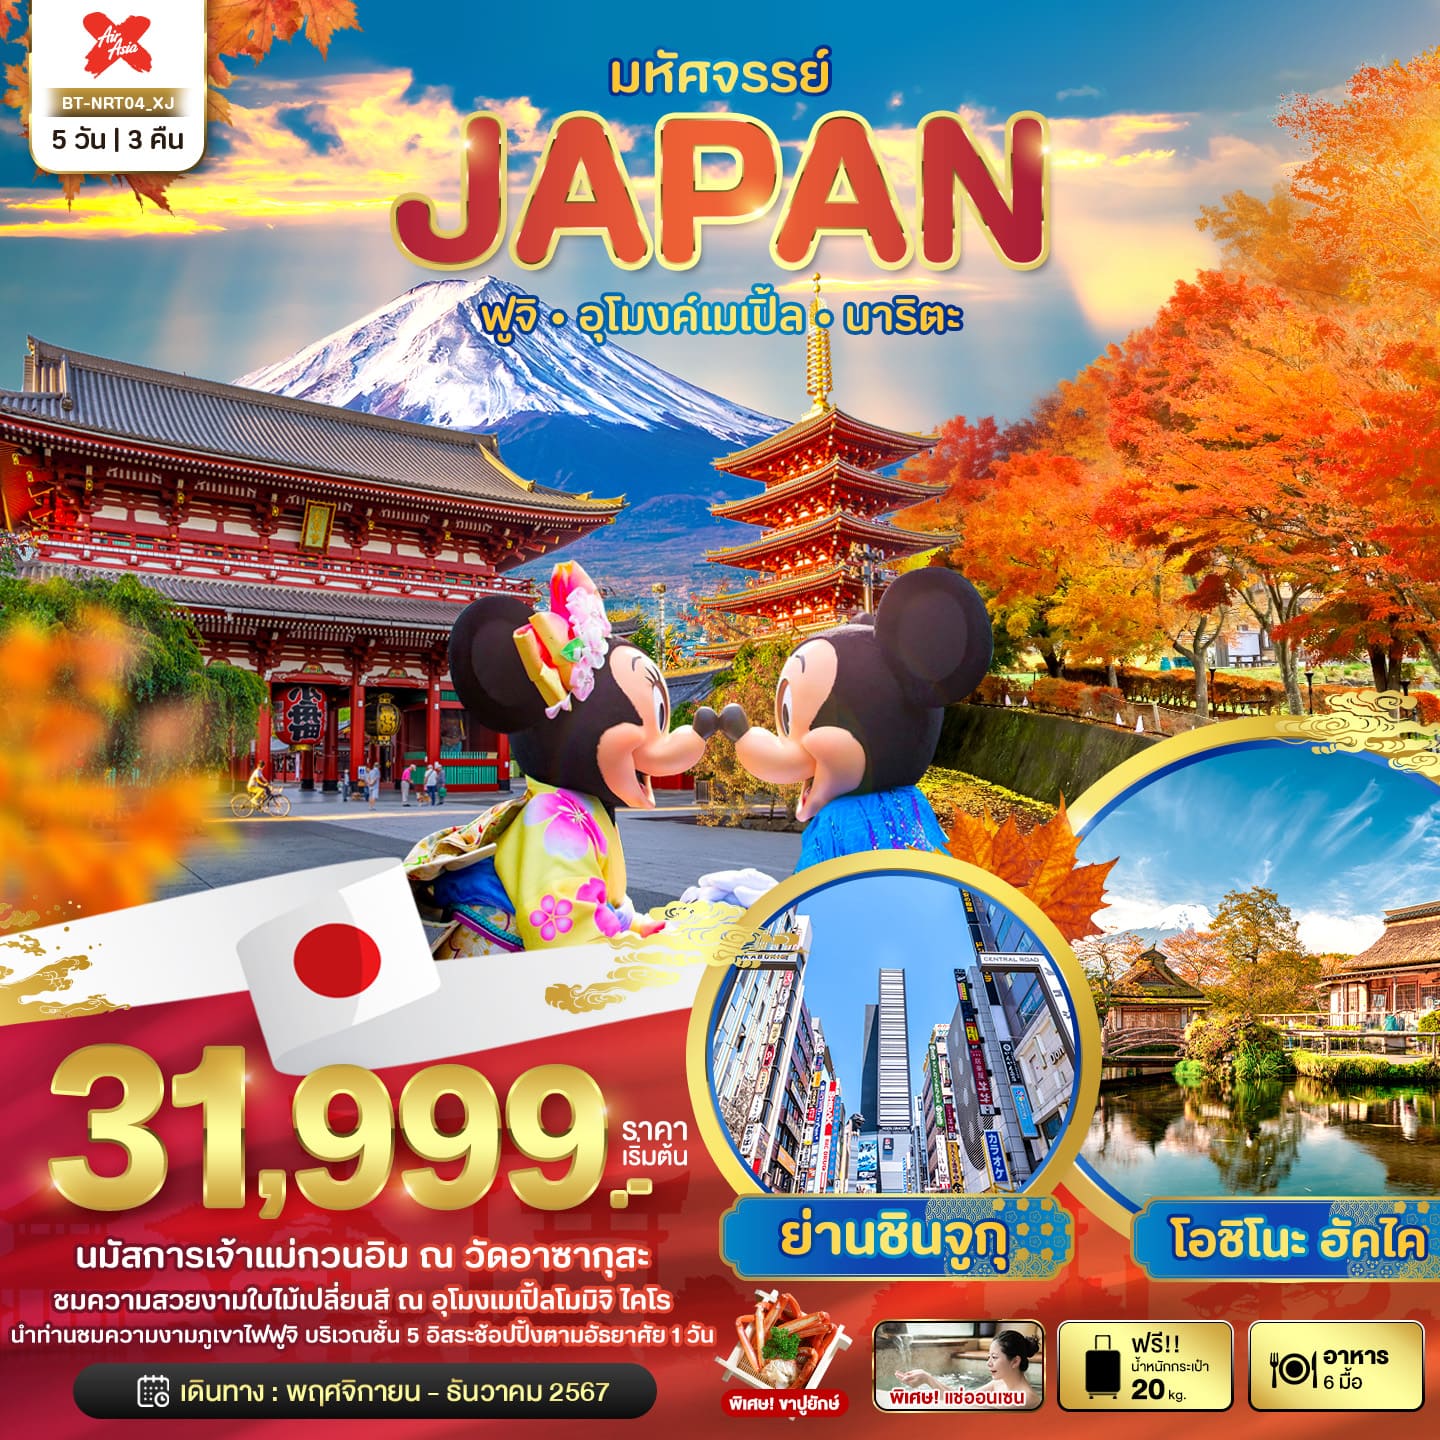 ทัวร์ญี่ปุ่น มหัศจรรย์ JAPAN ฟูจิ อุโมงค์เมเปิ้ล นาริตะ 5วัน 3คืน (XJ)